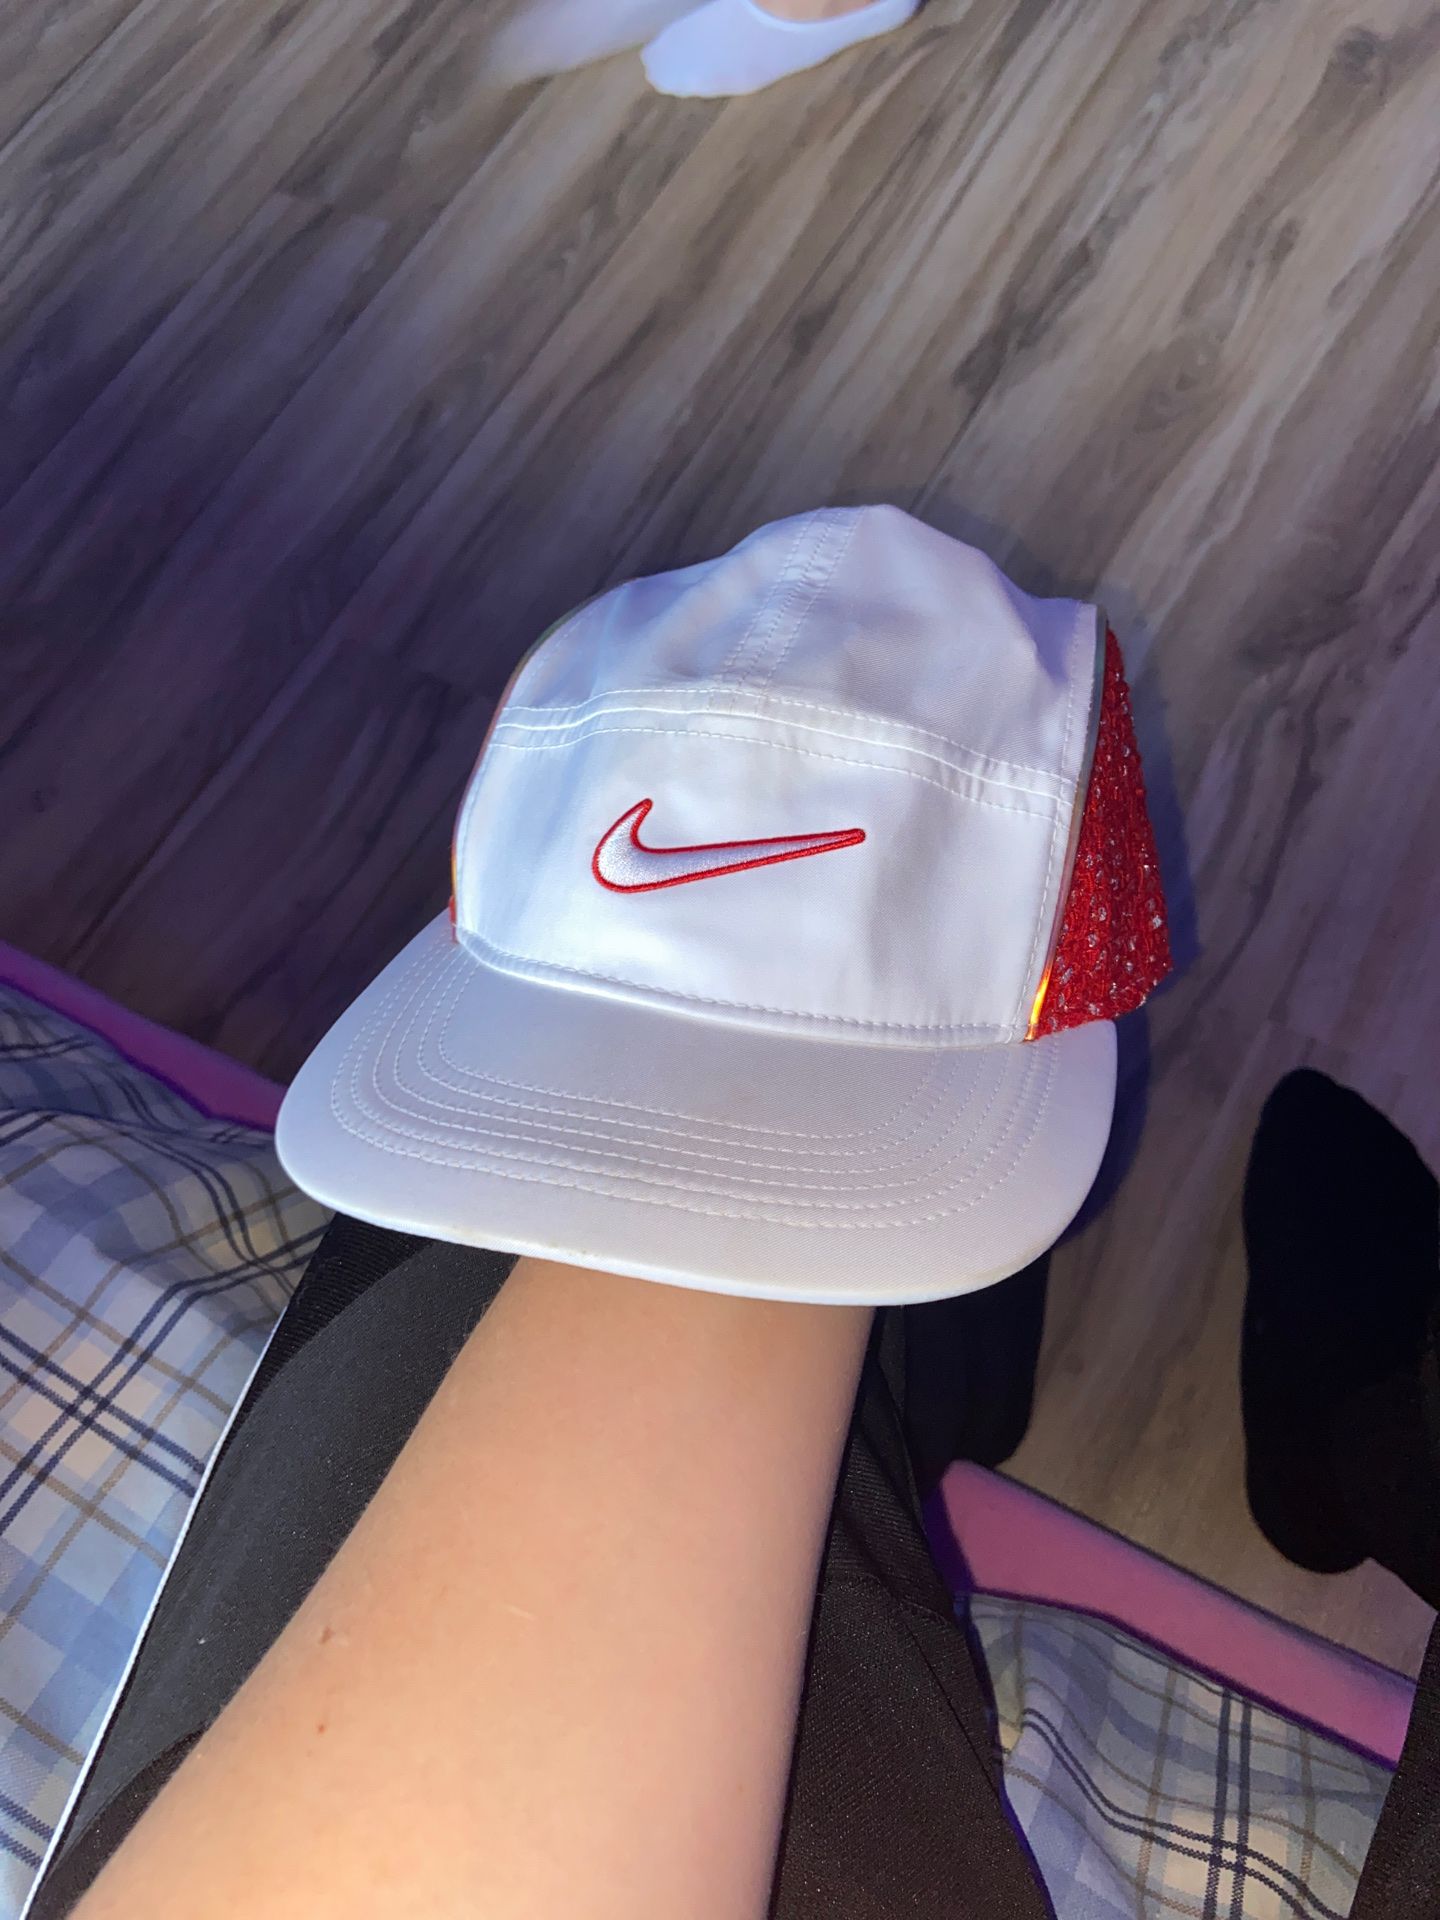 Supreme Nike hat